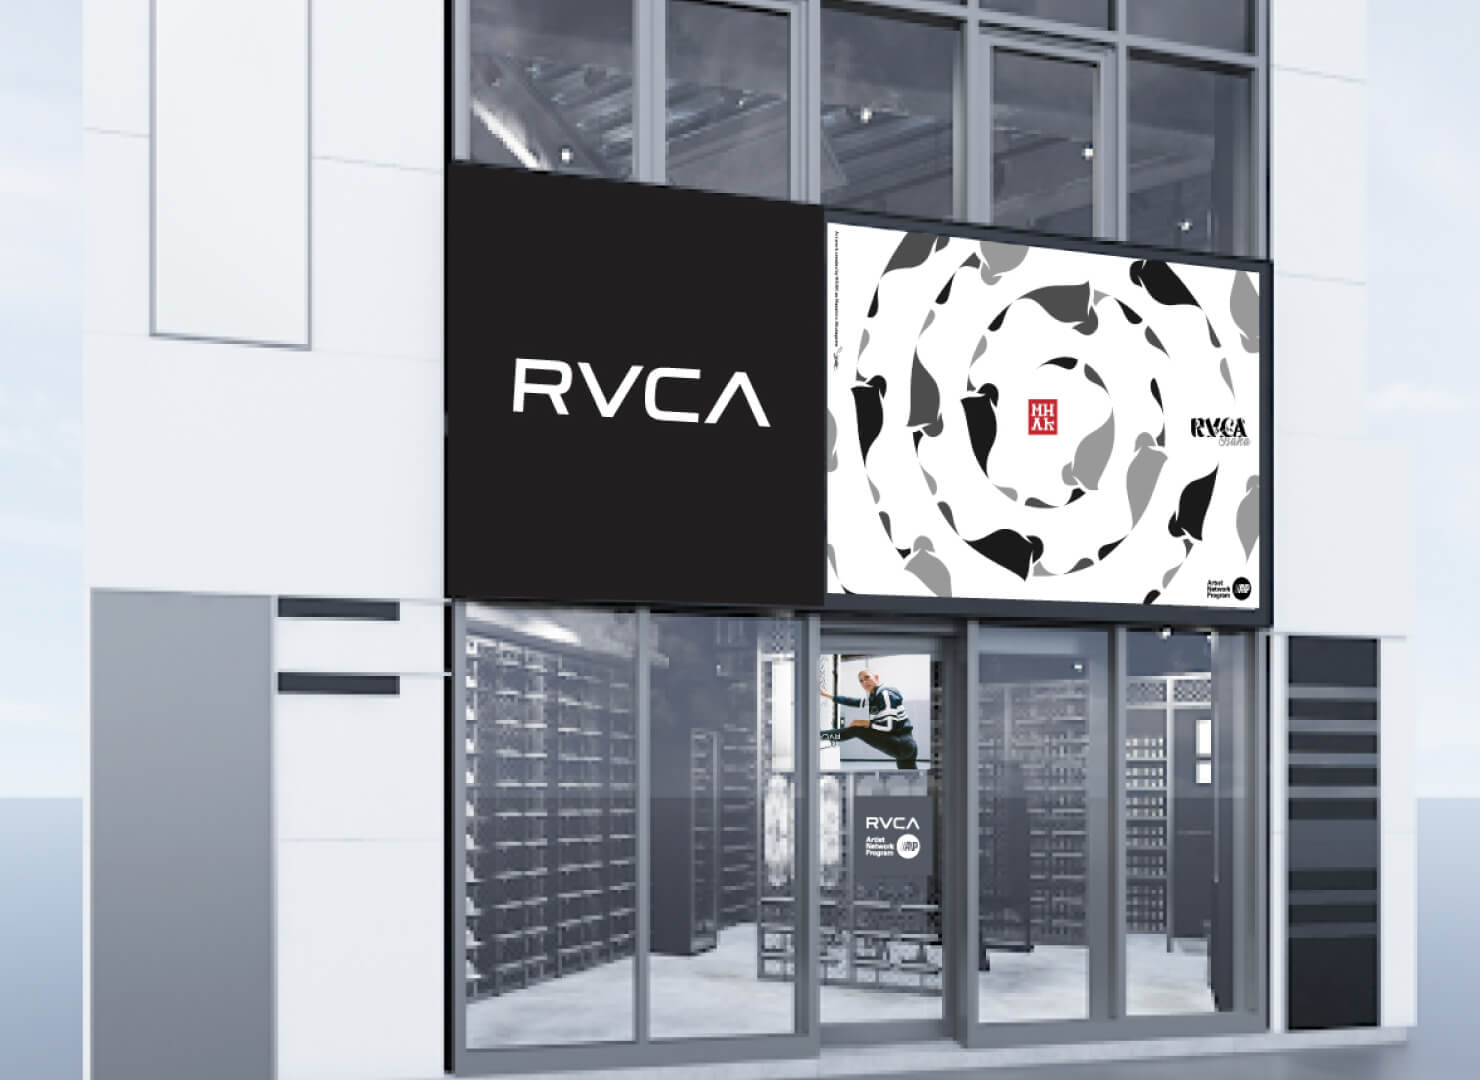 【8月16日】RVCA (ルーカ) の国内2号店が大阪心斎橋アメ村にオープン